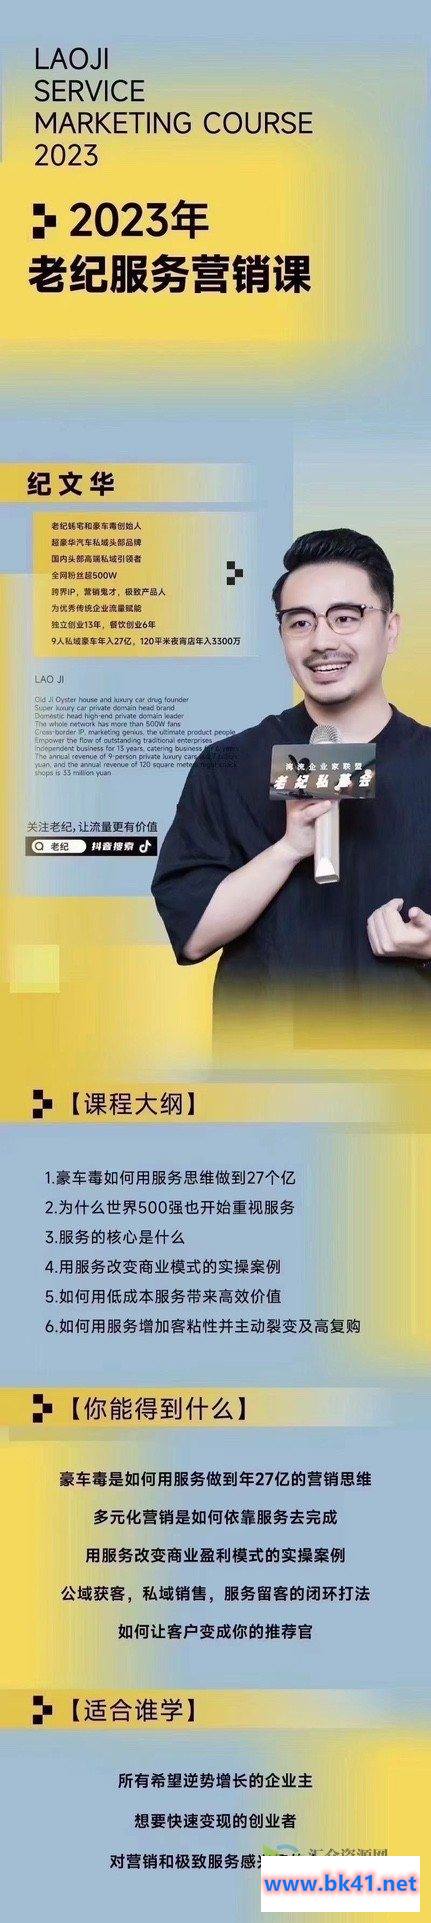 【老纪服务营销课】杭州第五届营销课，传统企业如何通过抖音短视频转型插图